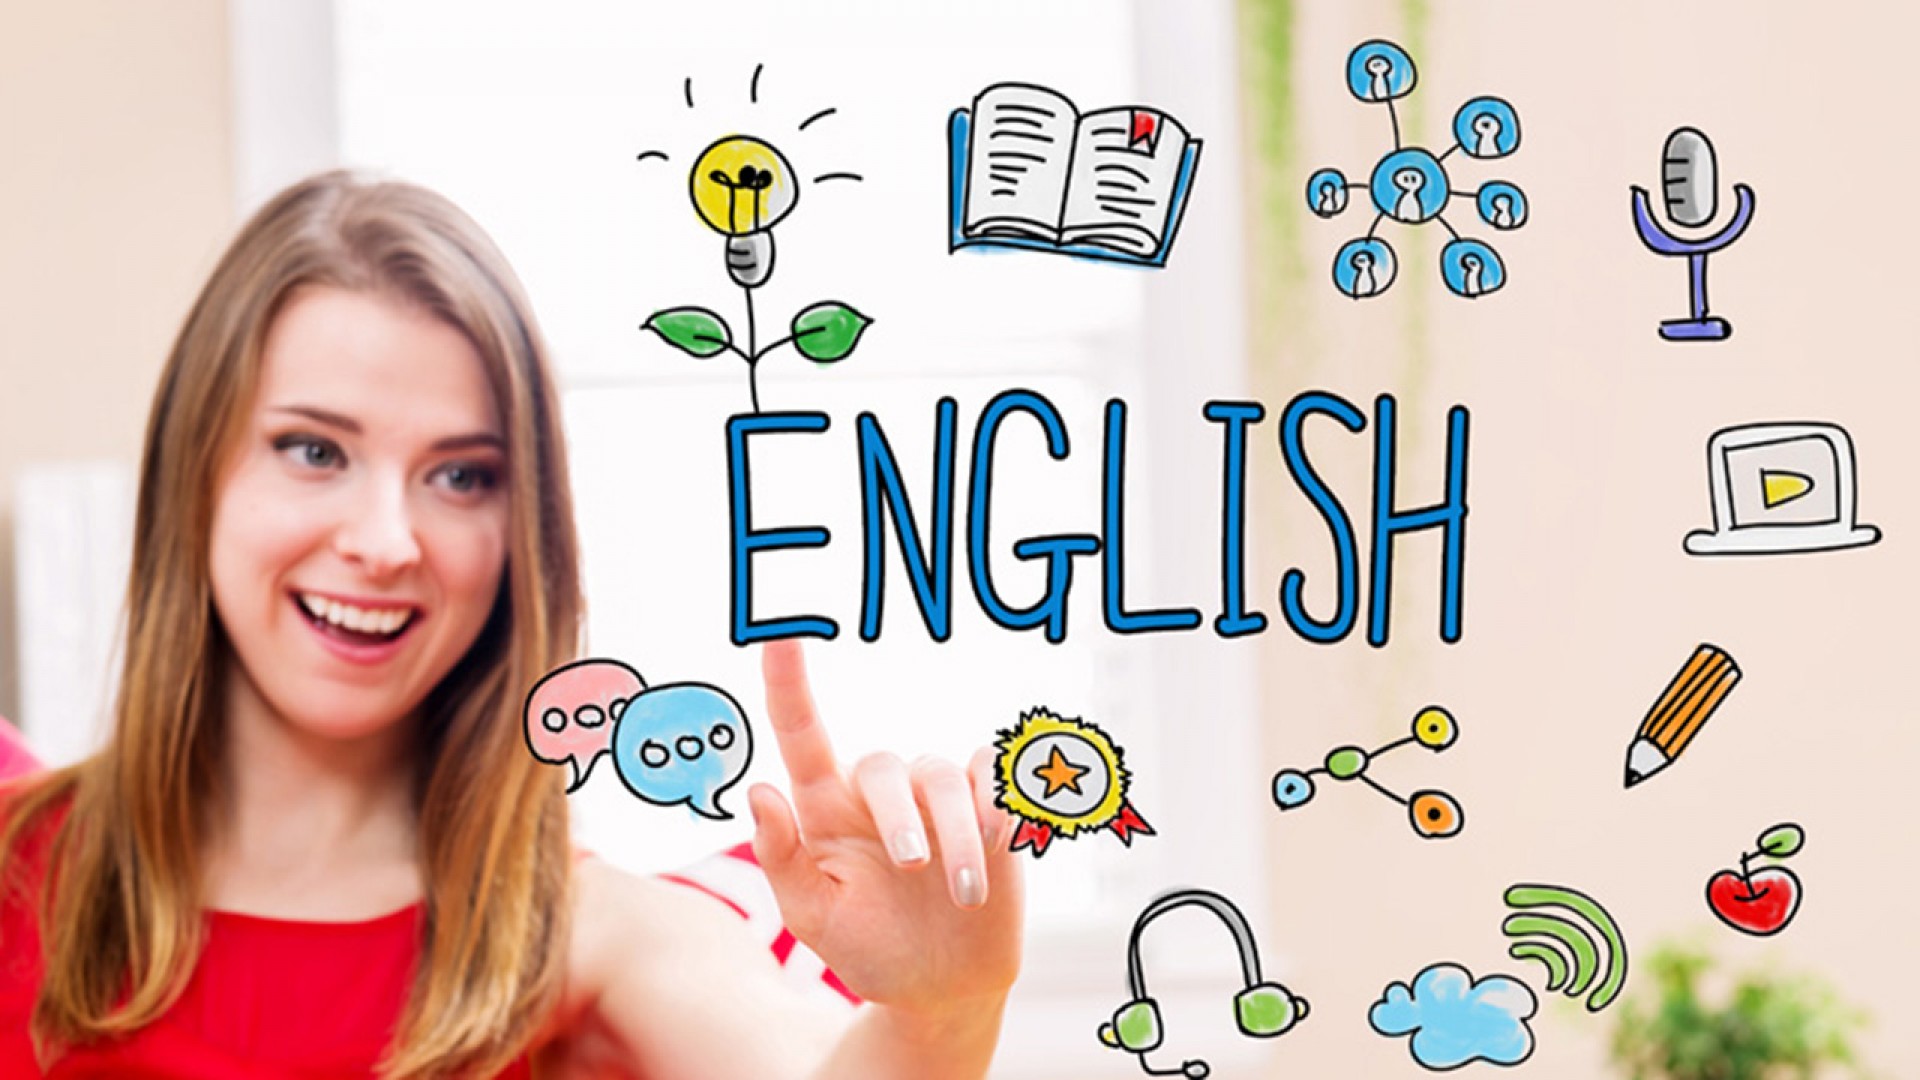 Cách học tiếng Anh trên mạng cùng các trang web miễn phí, tại sao không?